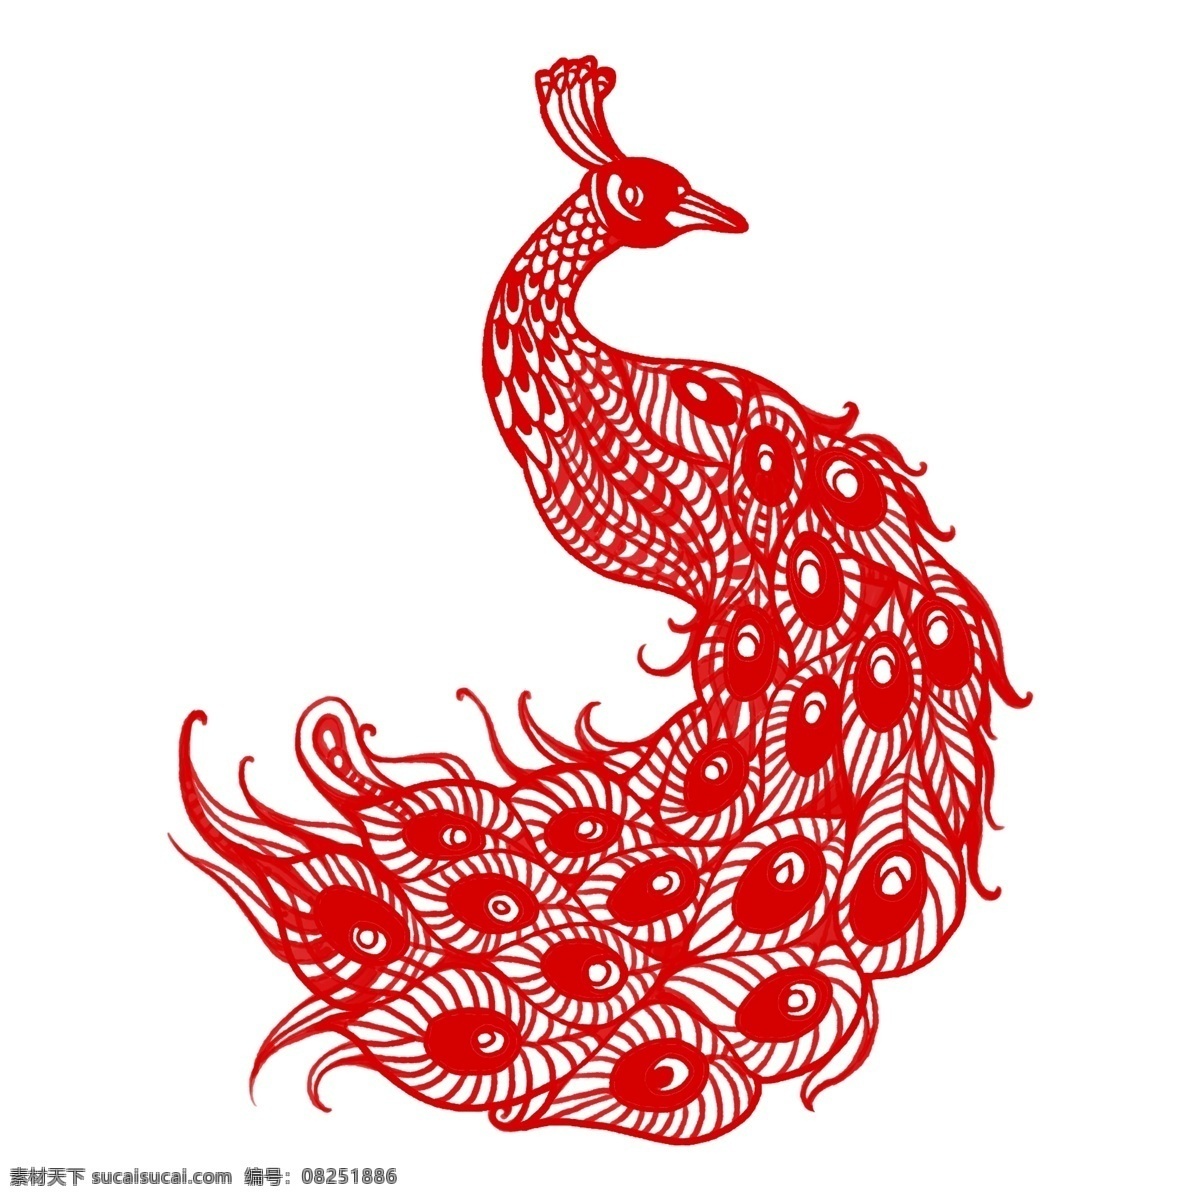 中国 风 节日 剪纸 画 动物 形象 窗花 挂件 矢量 剪纸画 艺术 展示 中国风 生肖 卡通设计